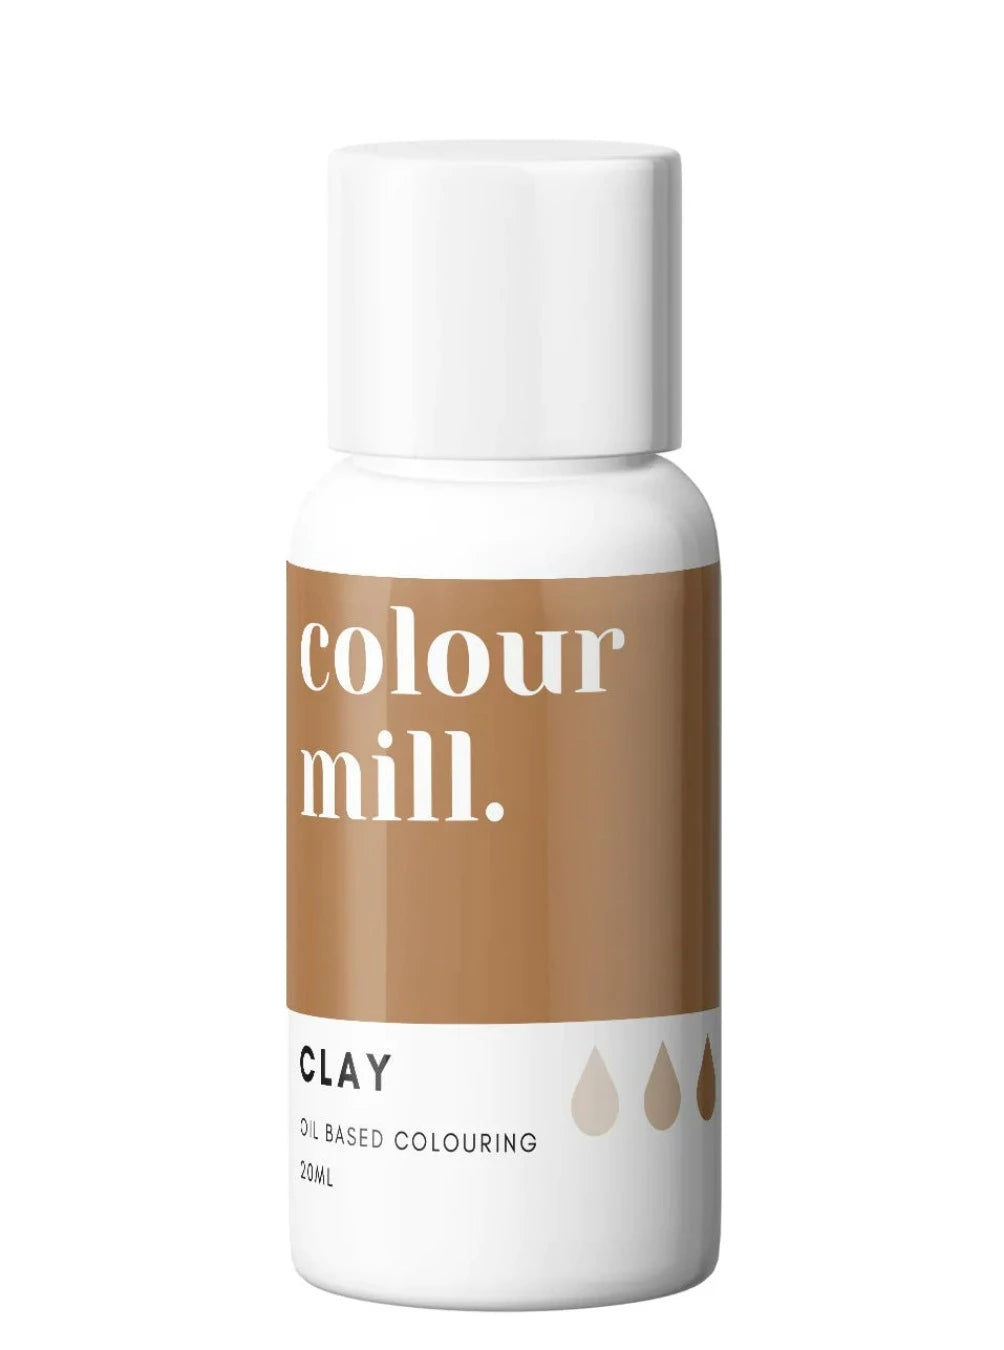 clay colour mill, colour mill, colour mill oil based, clay colour mill oil based , clay color 